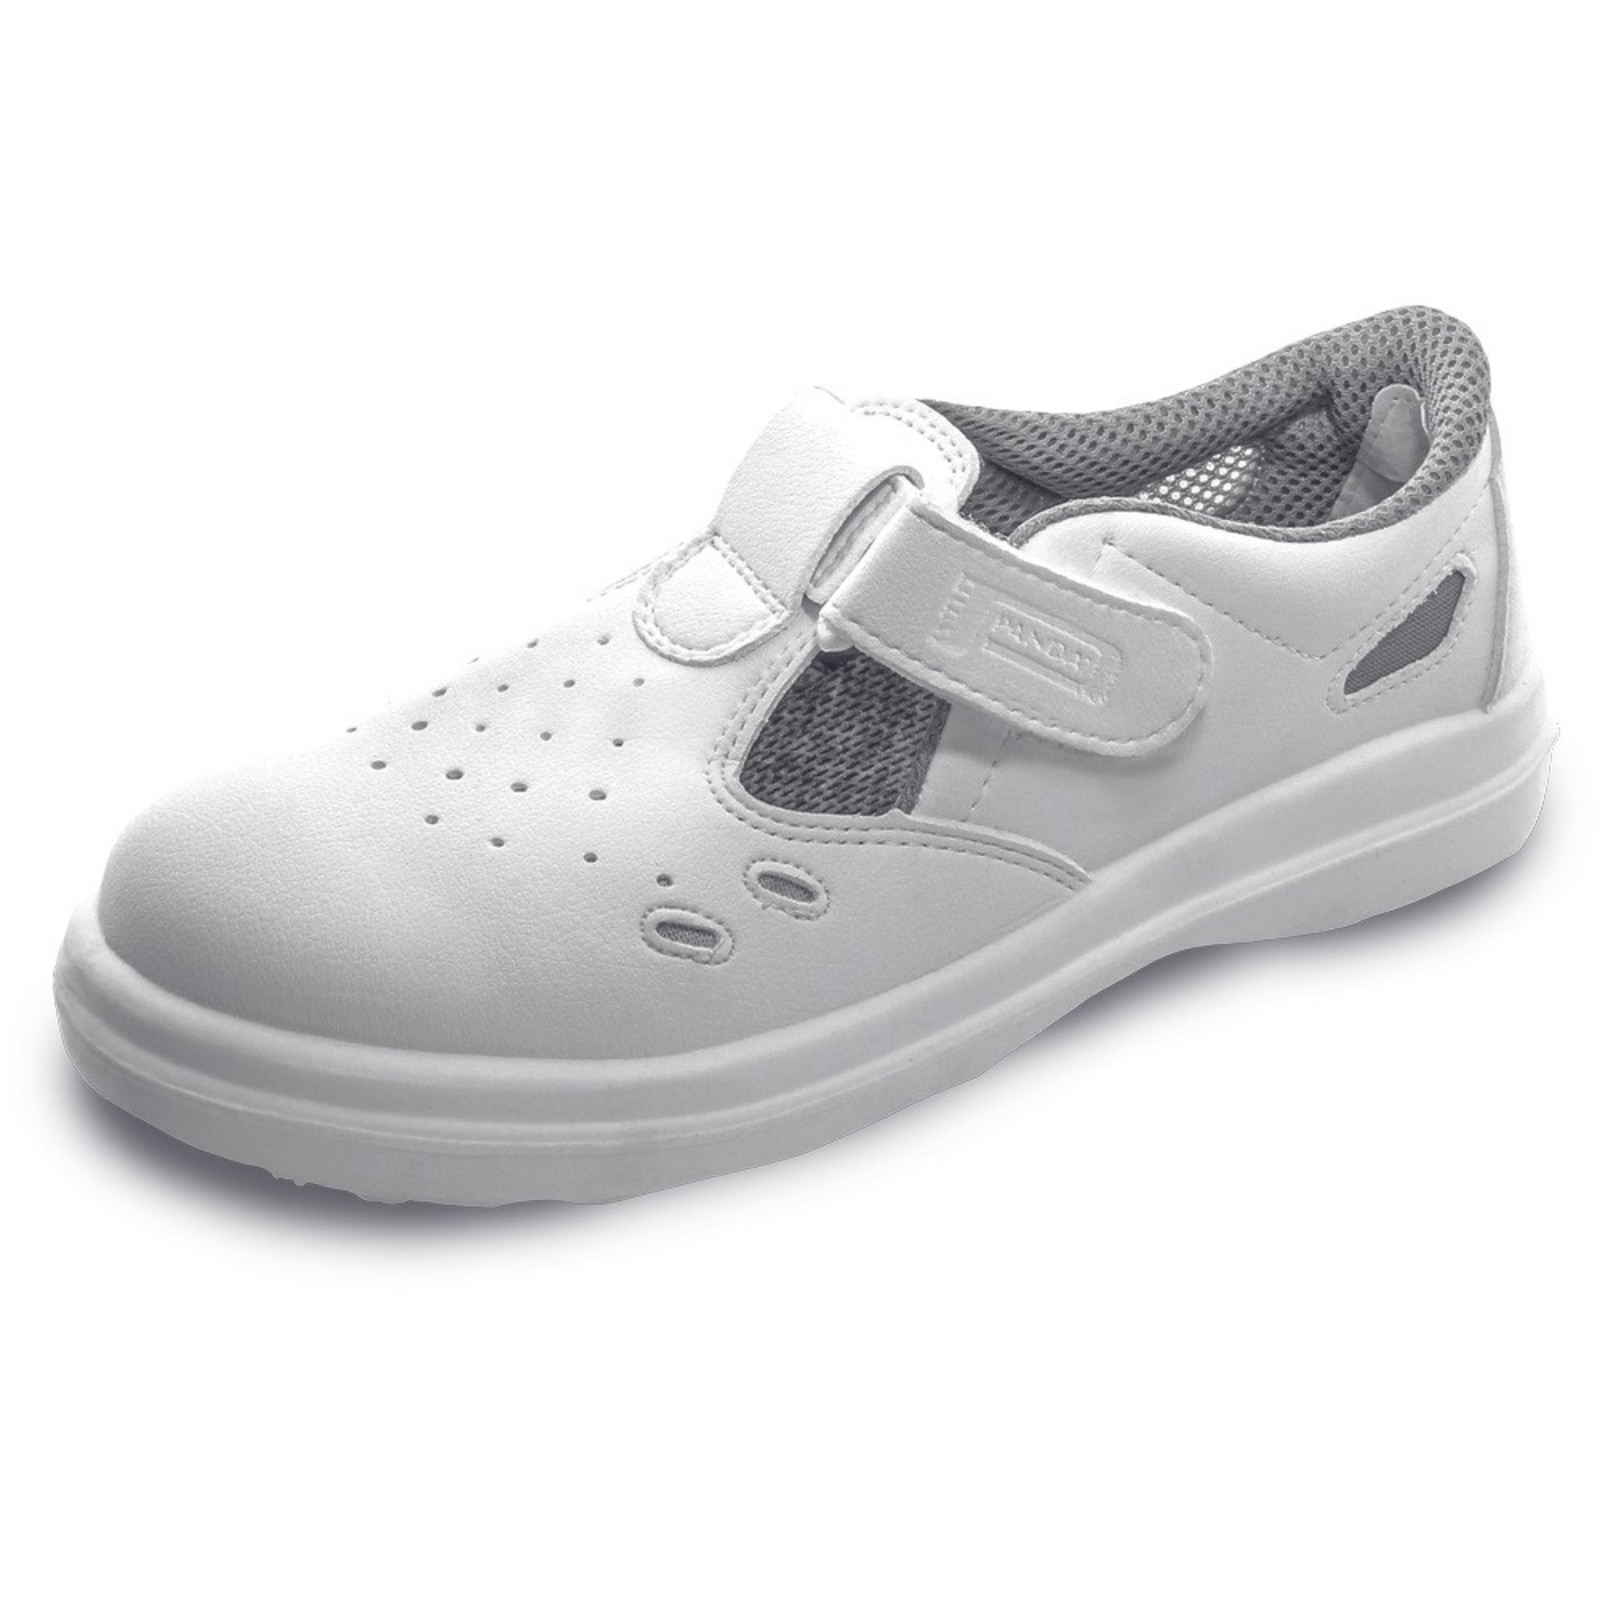 Bezpečnostné sandále Panda Sanitary Lybra S1 SRC - veľkosť: 36, farba: biela